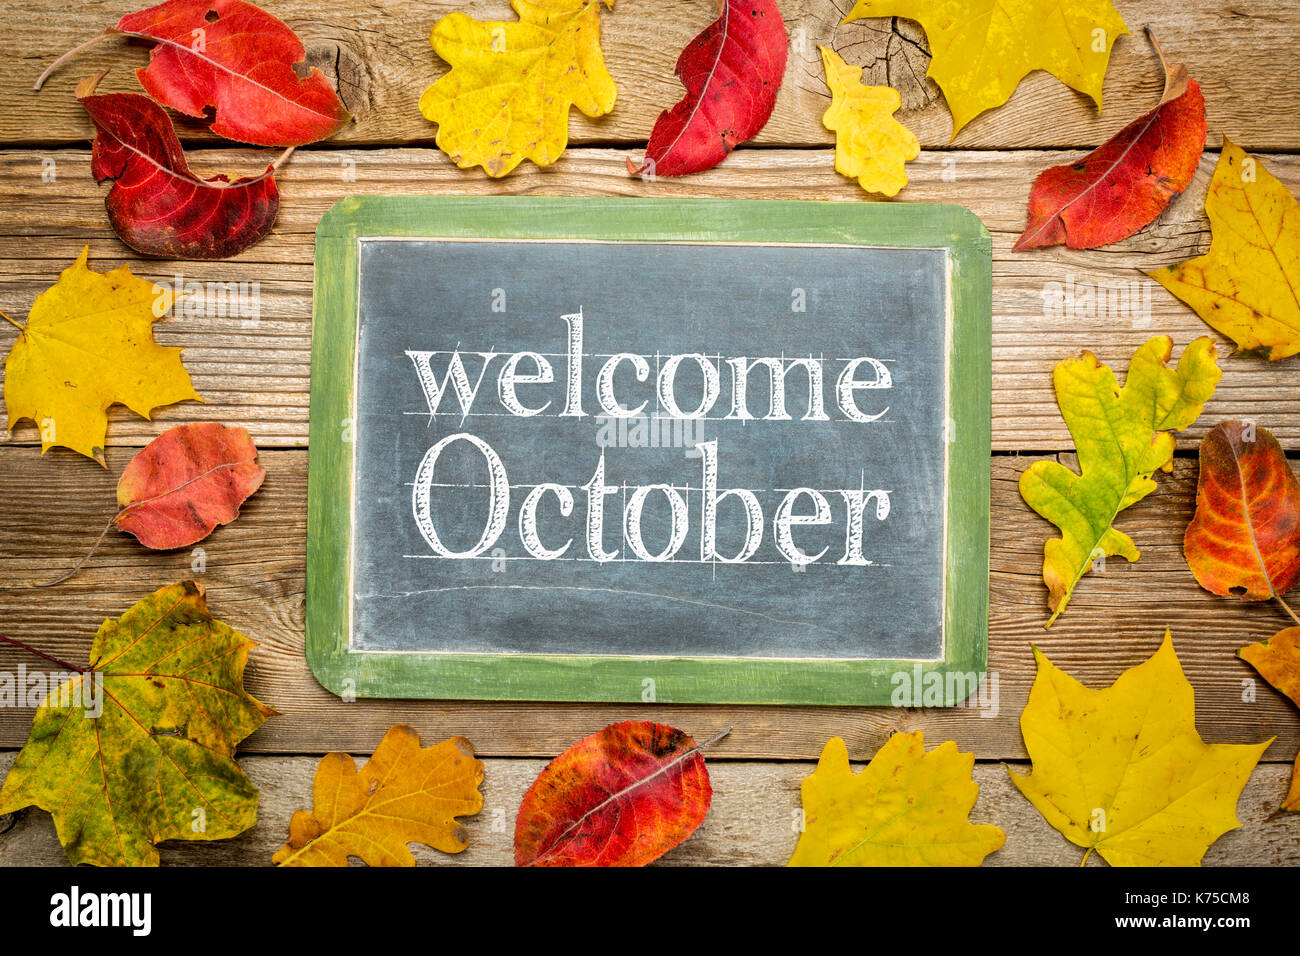 Oktober Willkommen auf einer Schiefertafel Schultafel gegen rustikalen verwittertes Holz Bretter mit bunten getrocknete Blätter Stockfoto